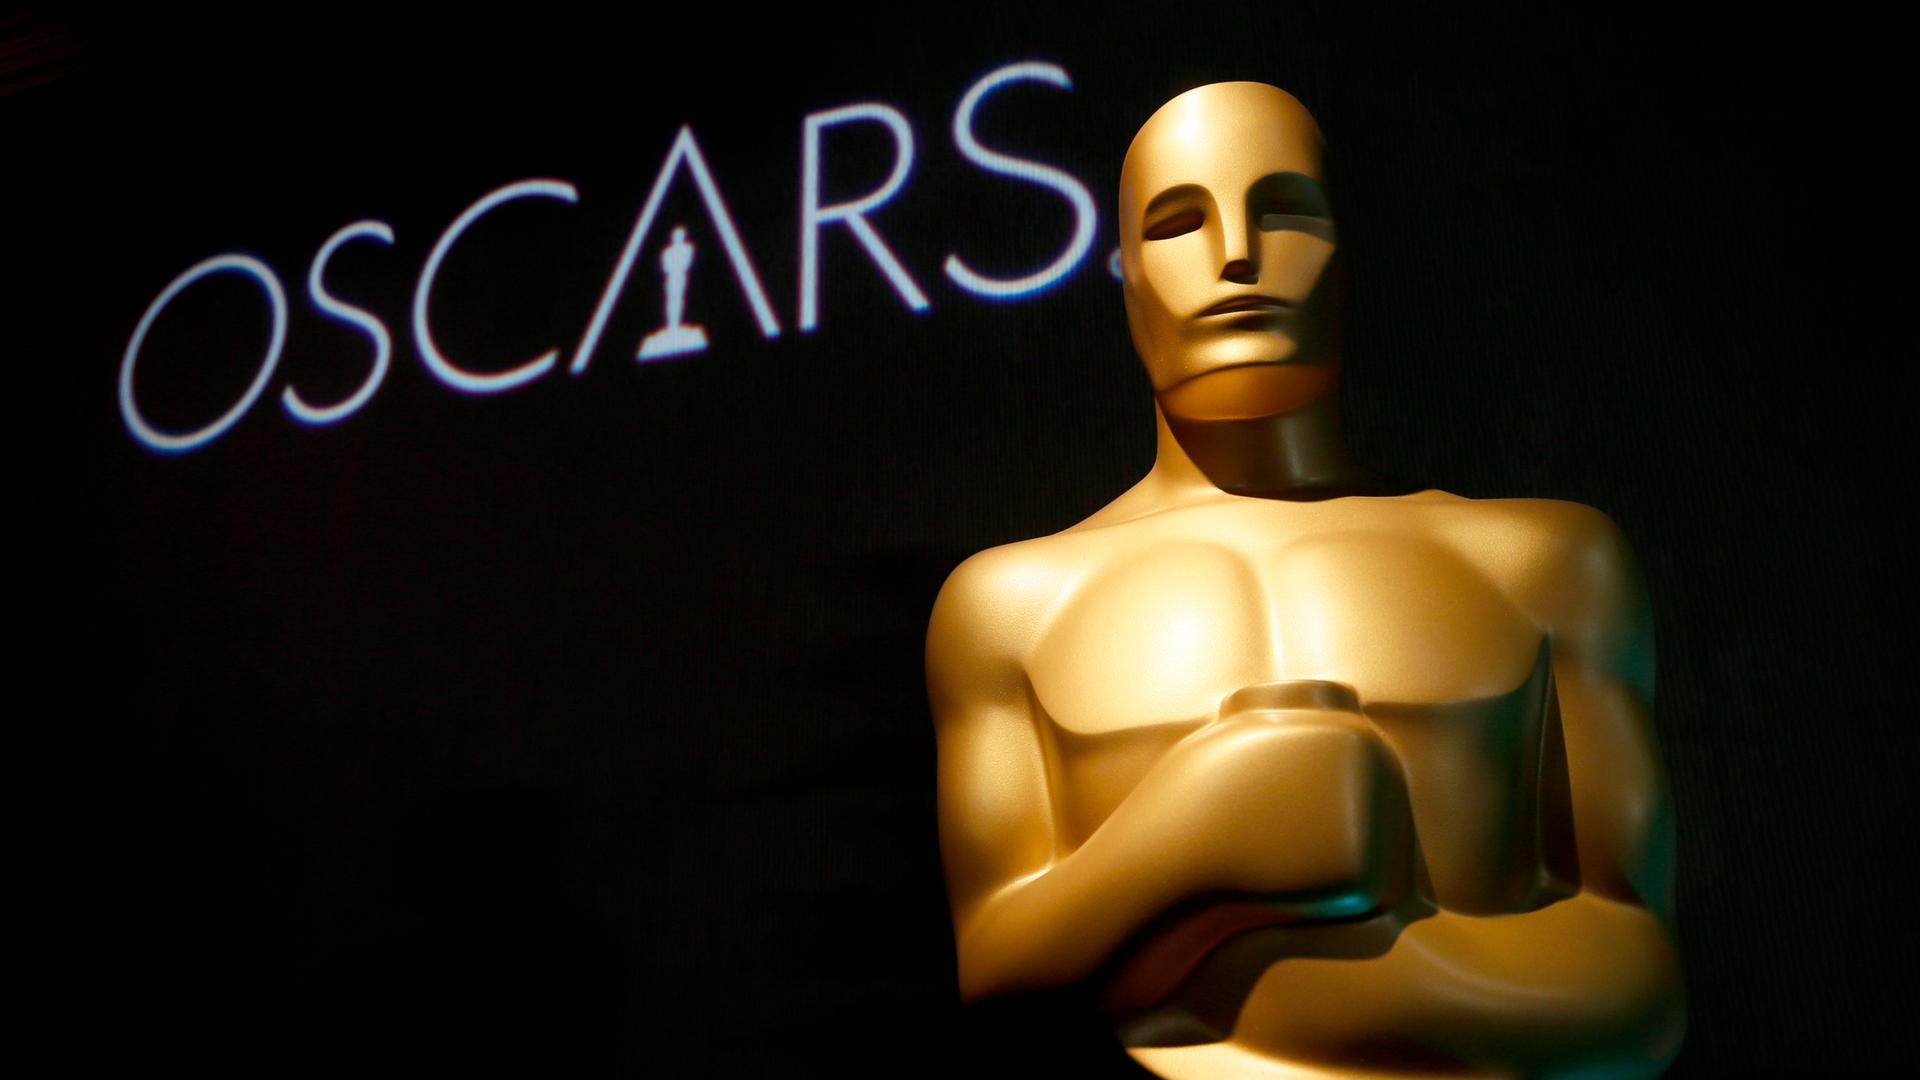 Das Bild zeigt eine große Oscar-Figur. Im Hintergrund steht auf einer schwarzen Wand "Oscars".